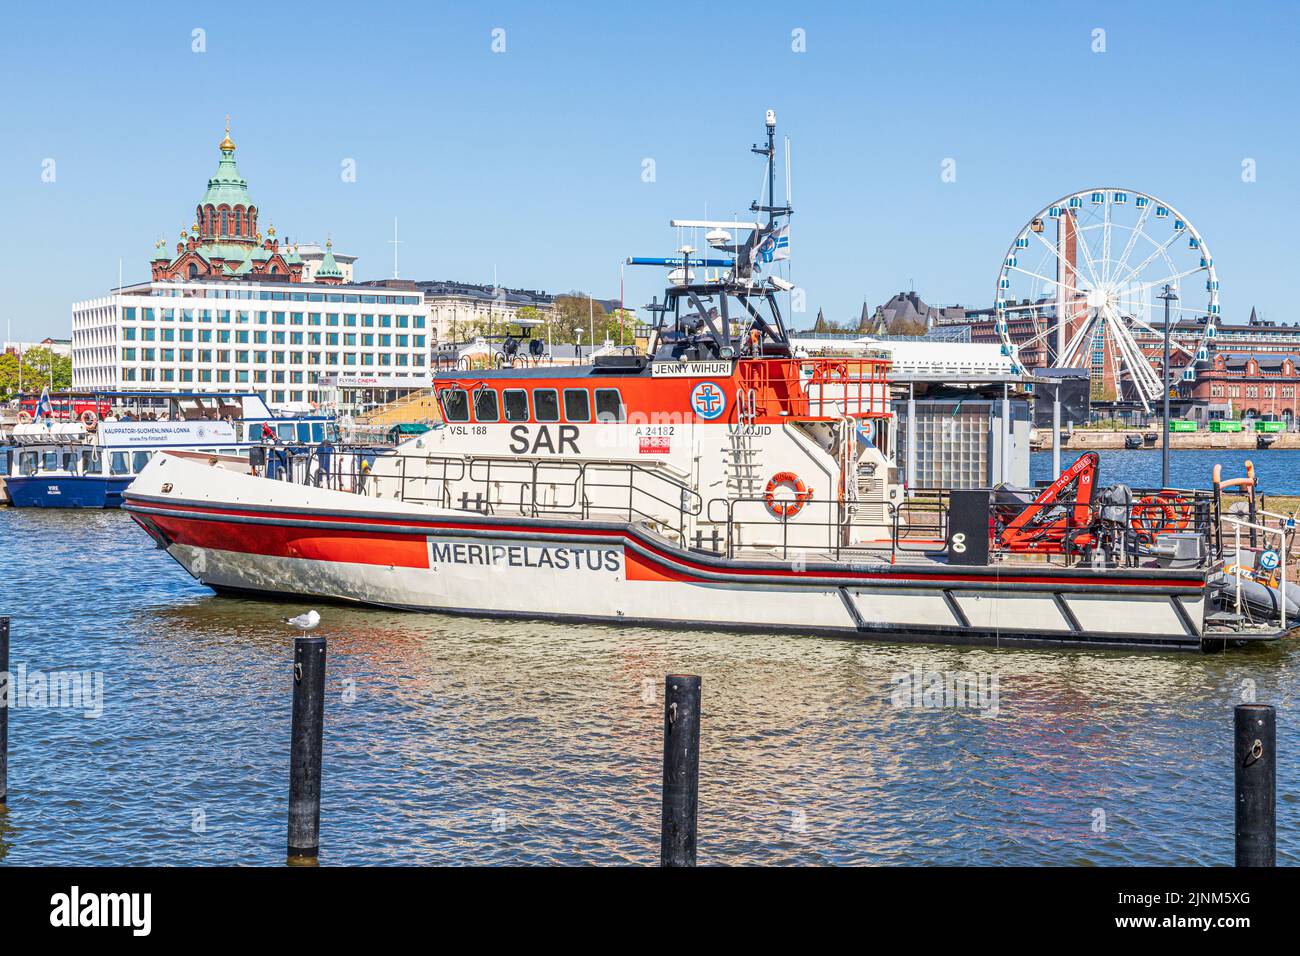 El crucero de rescate Jenny Wihuri, el barco escolar de la Maritime Rescue Society, en el puerto de Helsinki, Finlandia Foto de stock